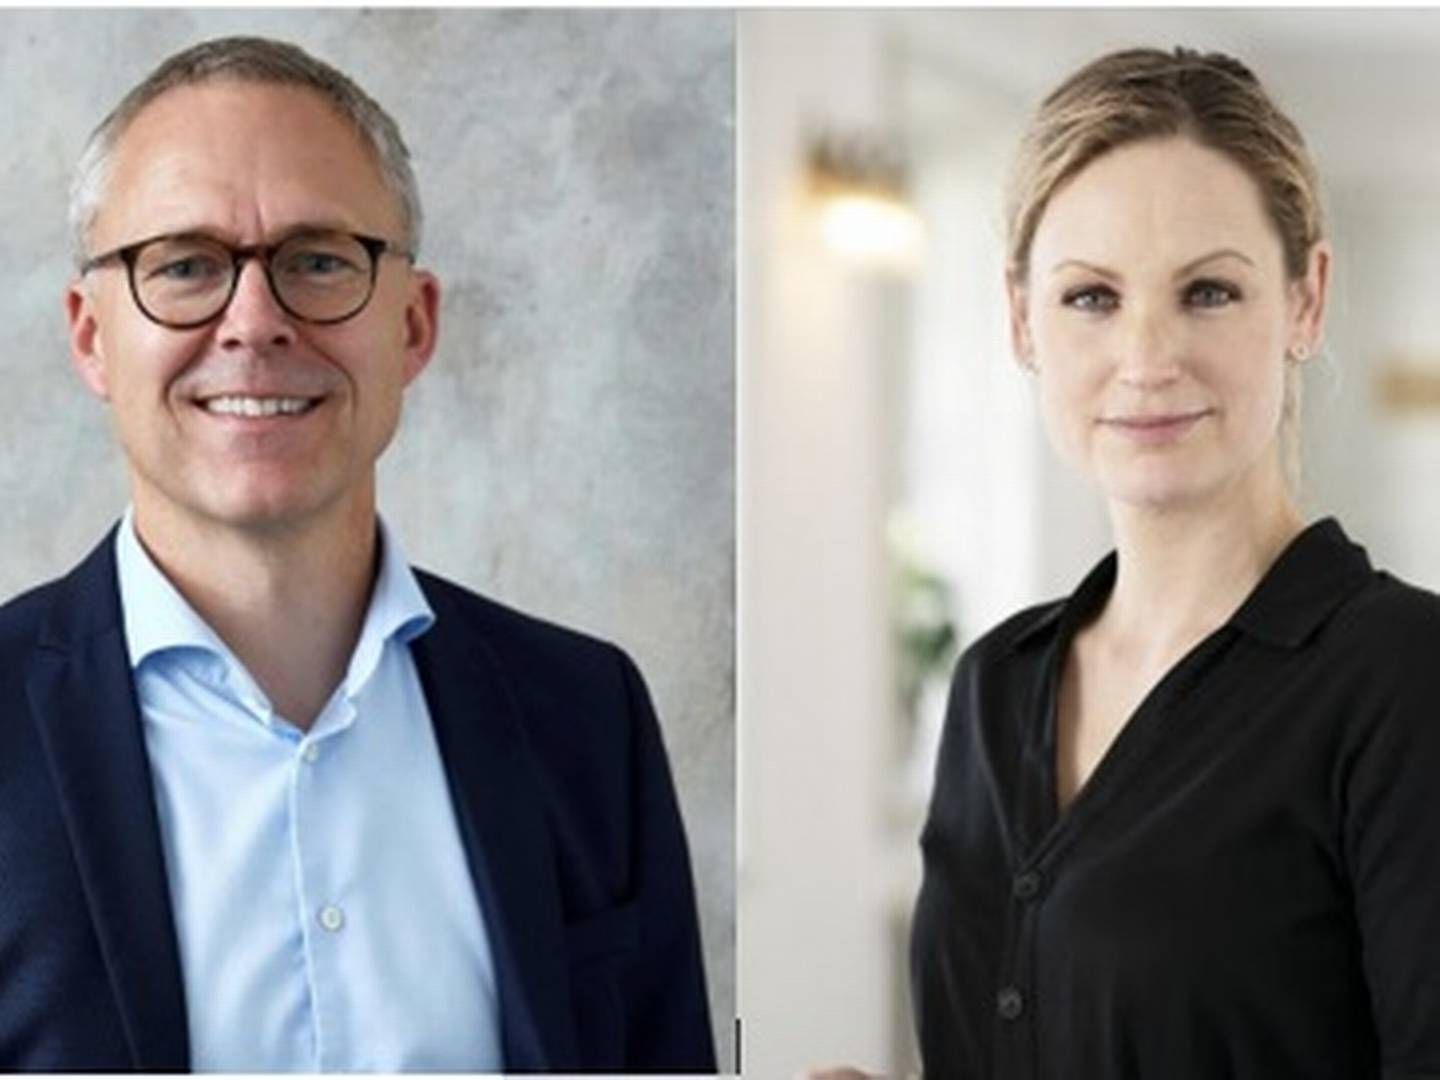 Adm. direktør for OK indtræder som næstformand i Coop Danmarks bestyrelse, hvor Pernille Skipper, der er forkvinde for Coop Amba, også har plads. | Foto: PR/OK, PR/Coop